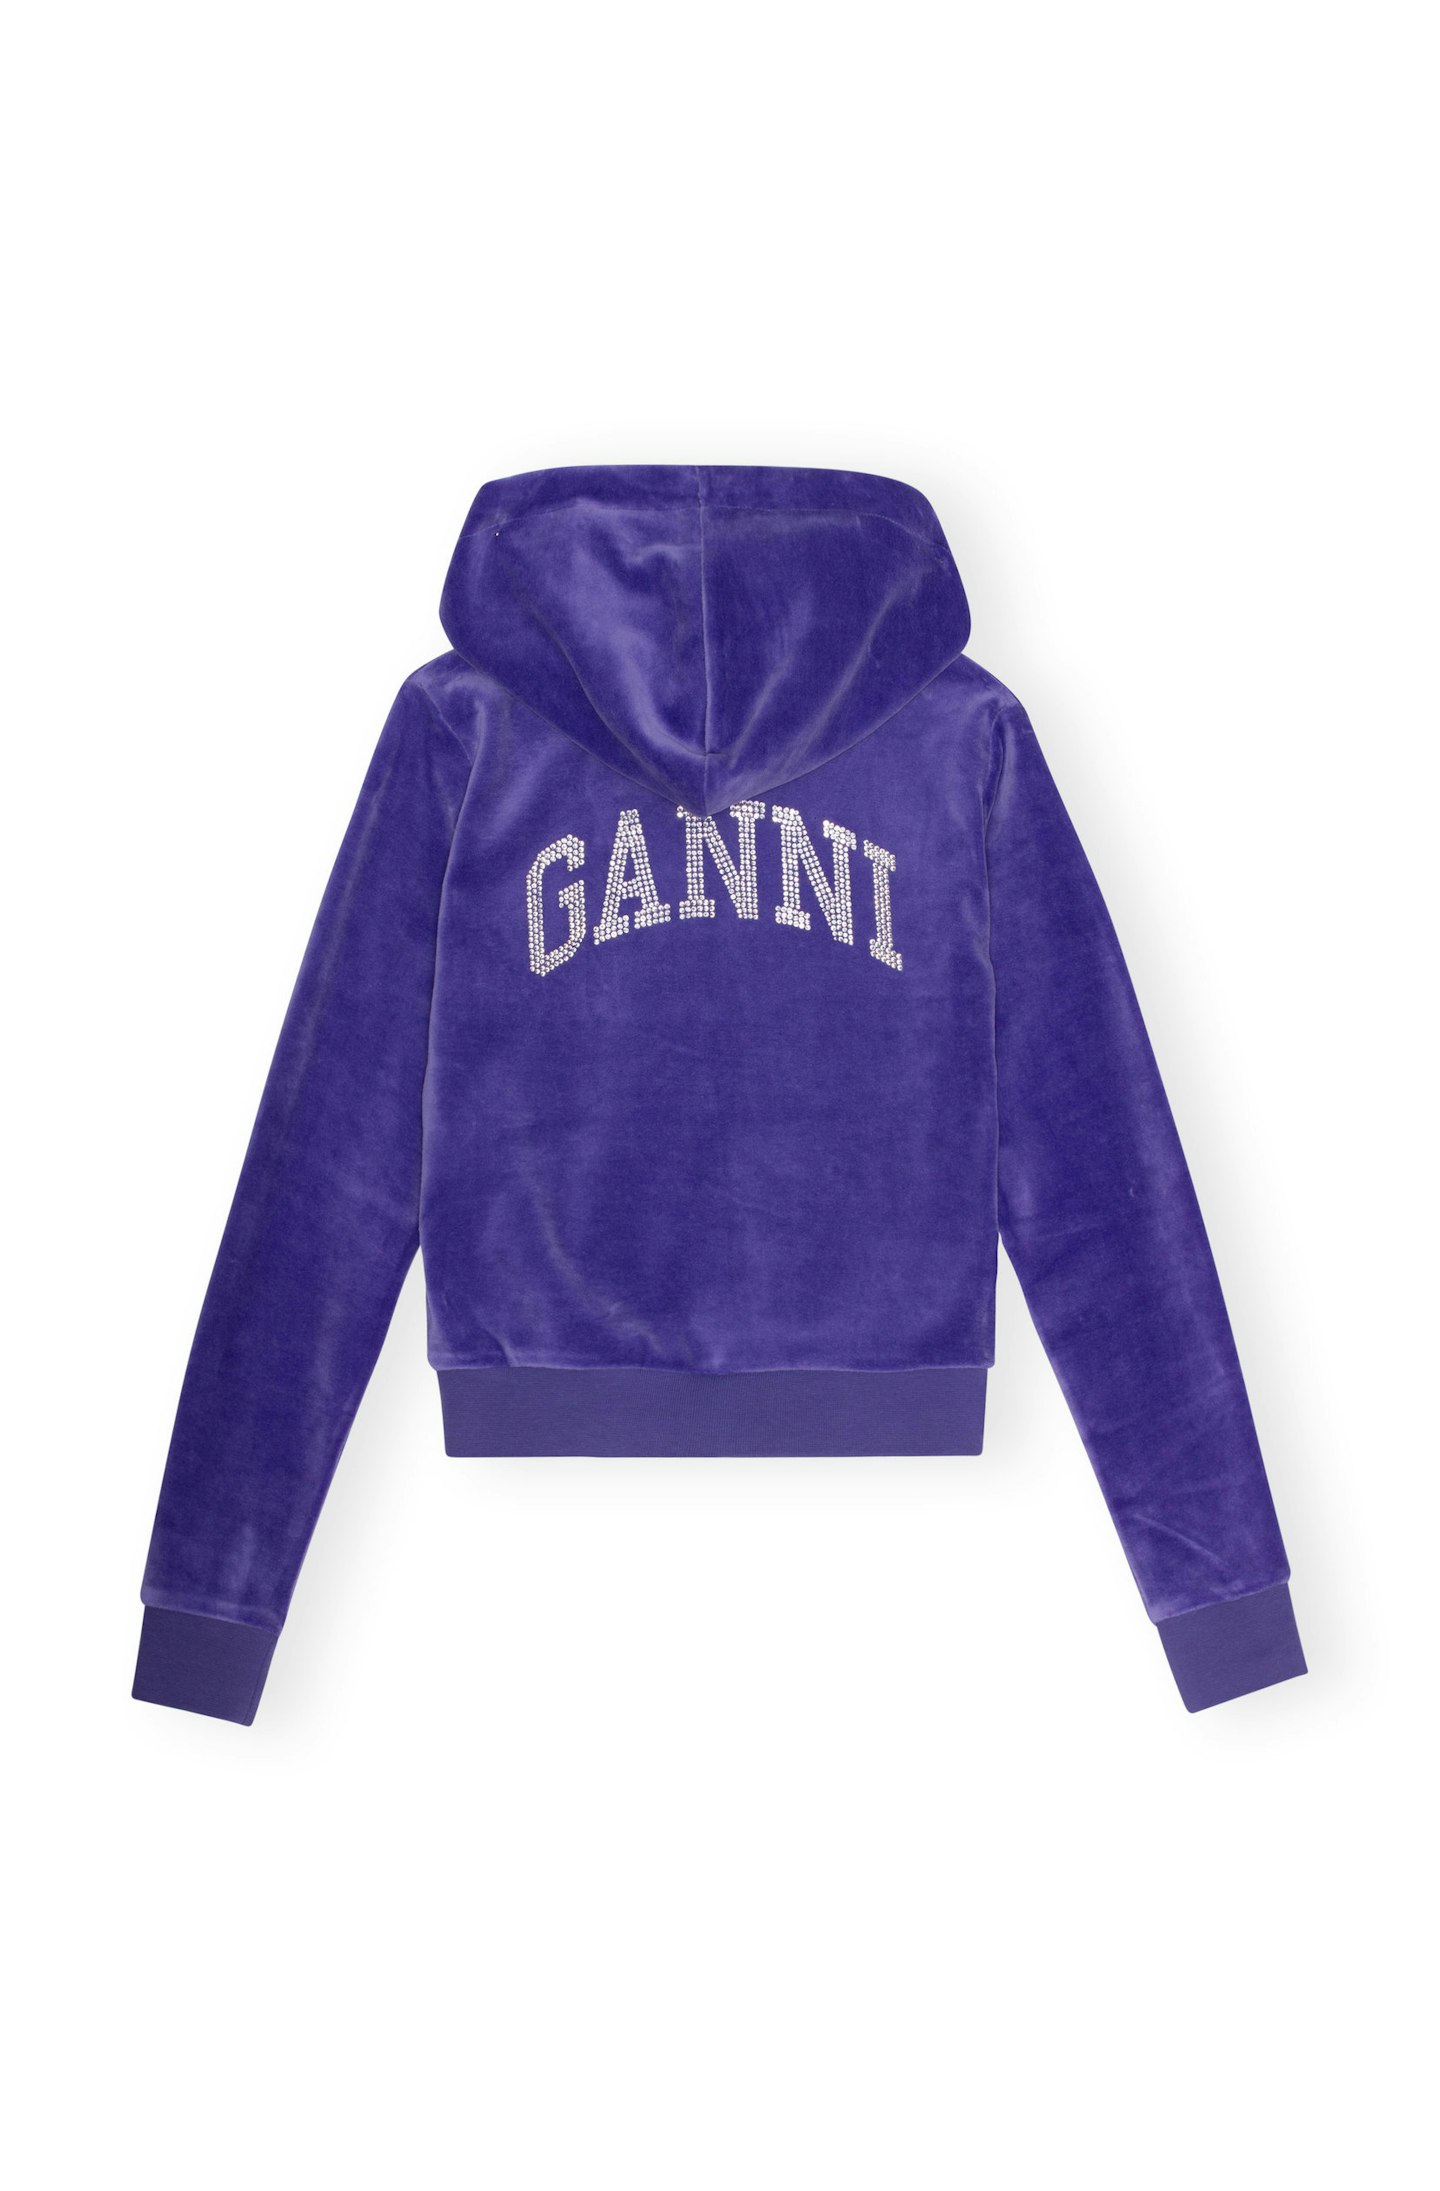 GANNI x Juicy Couture Velvet Track Zipper Hoodie Sweatshirt Iris, £175